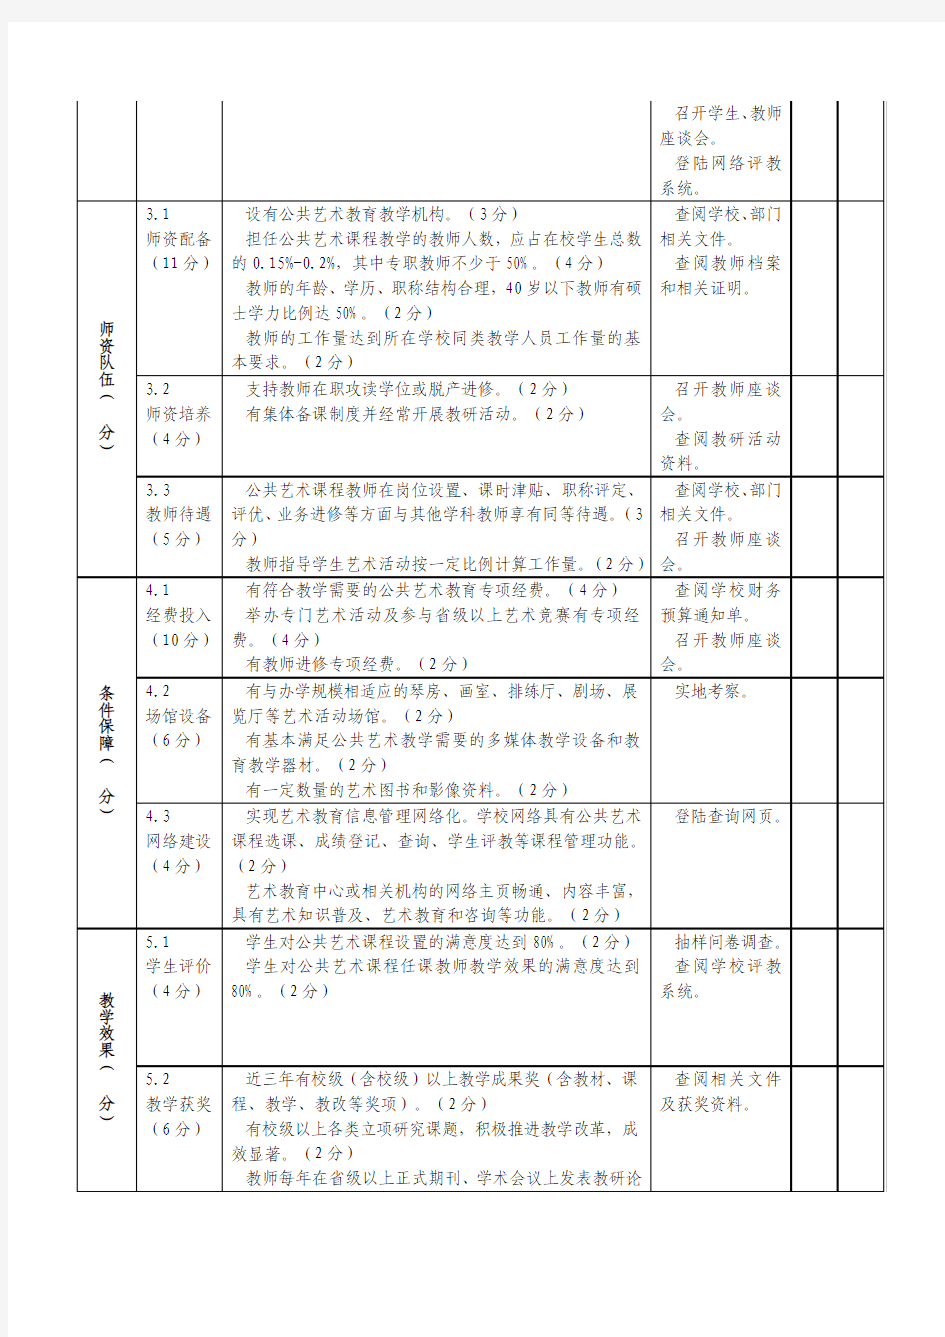 江苏省普通高等学校公共艺术课程考核标准与办法